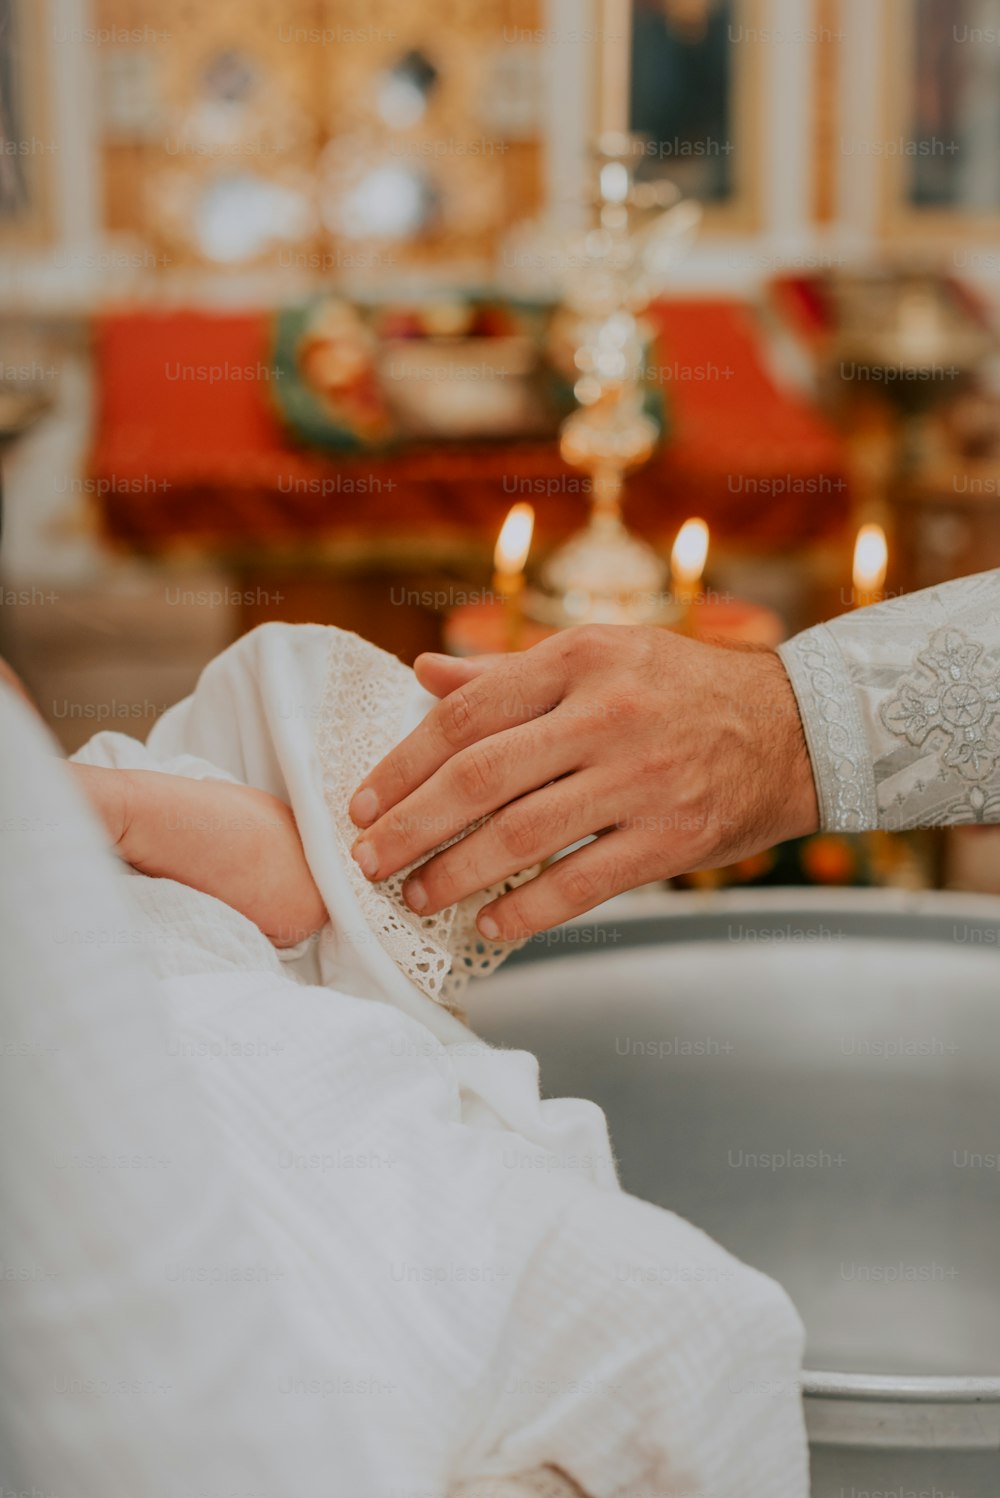 Un bebé está siendo sostenido por un sacerdote